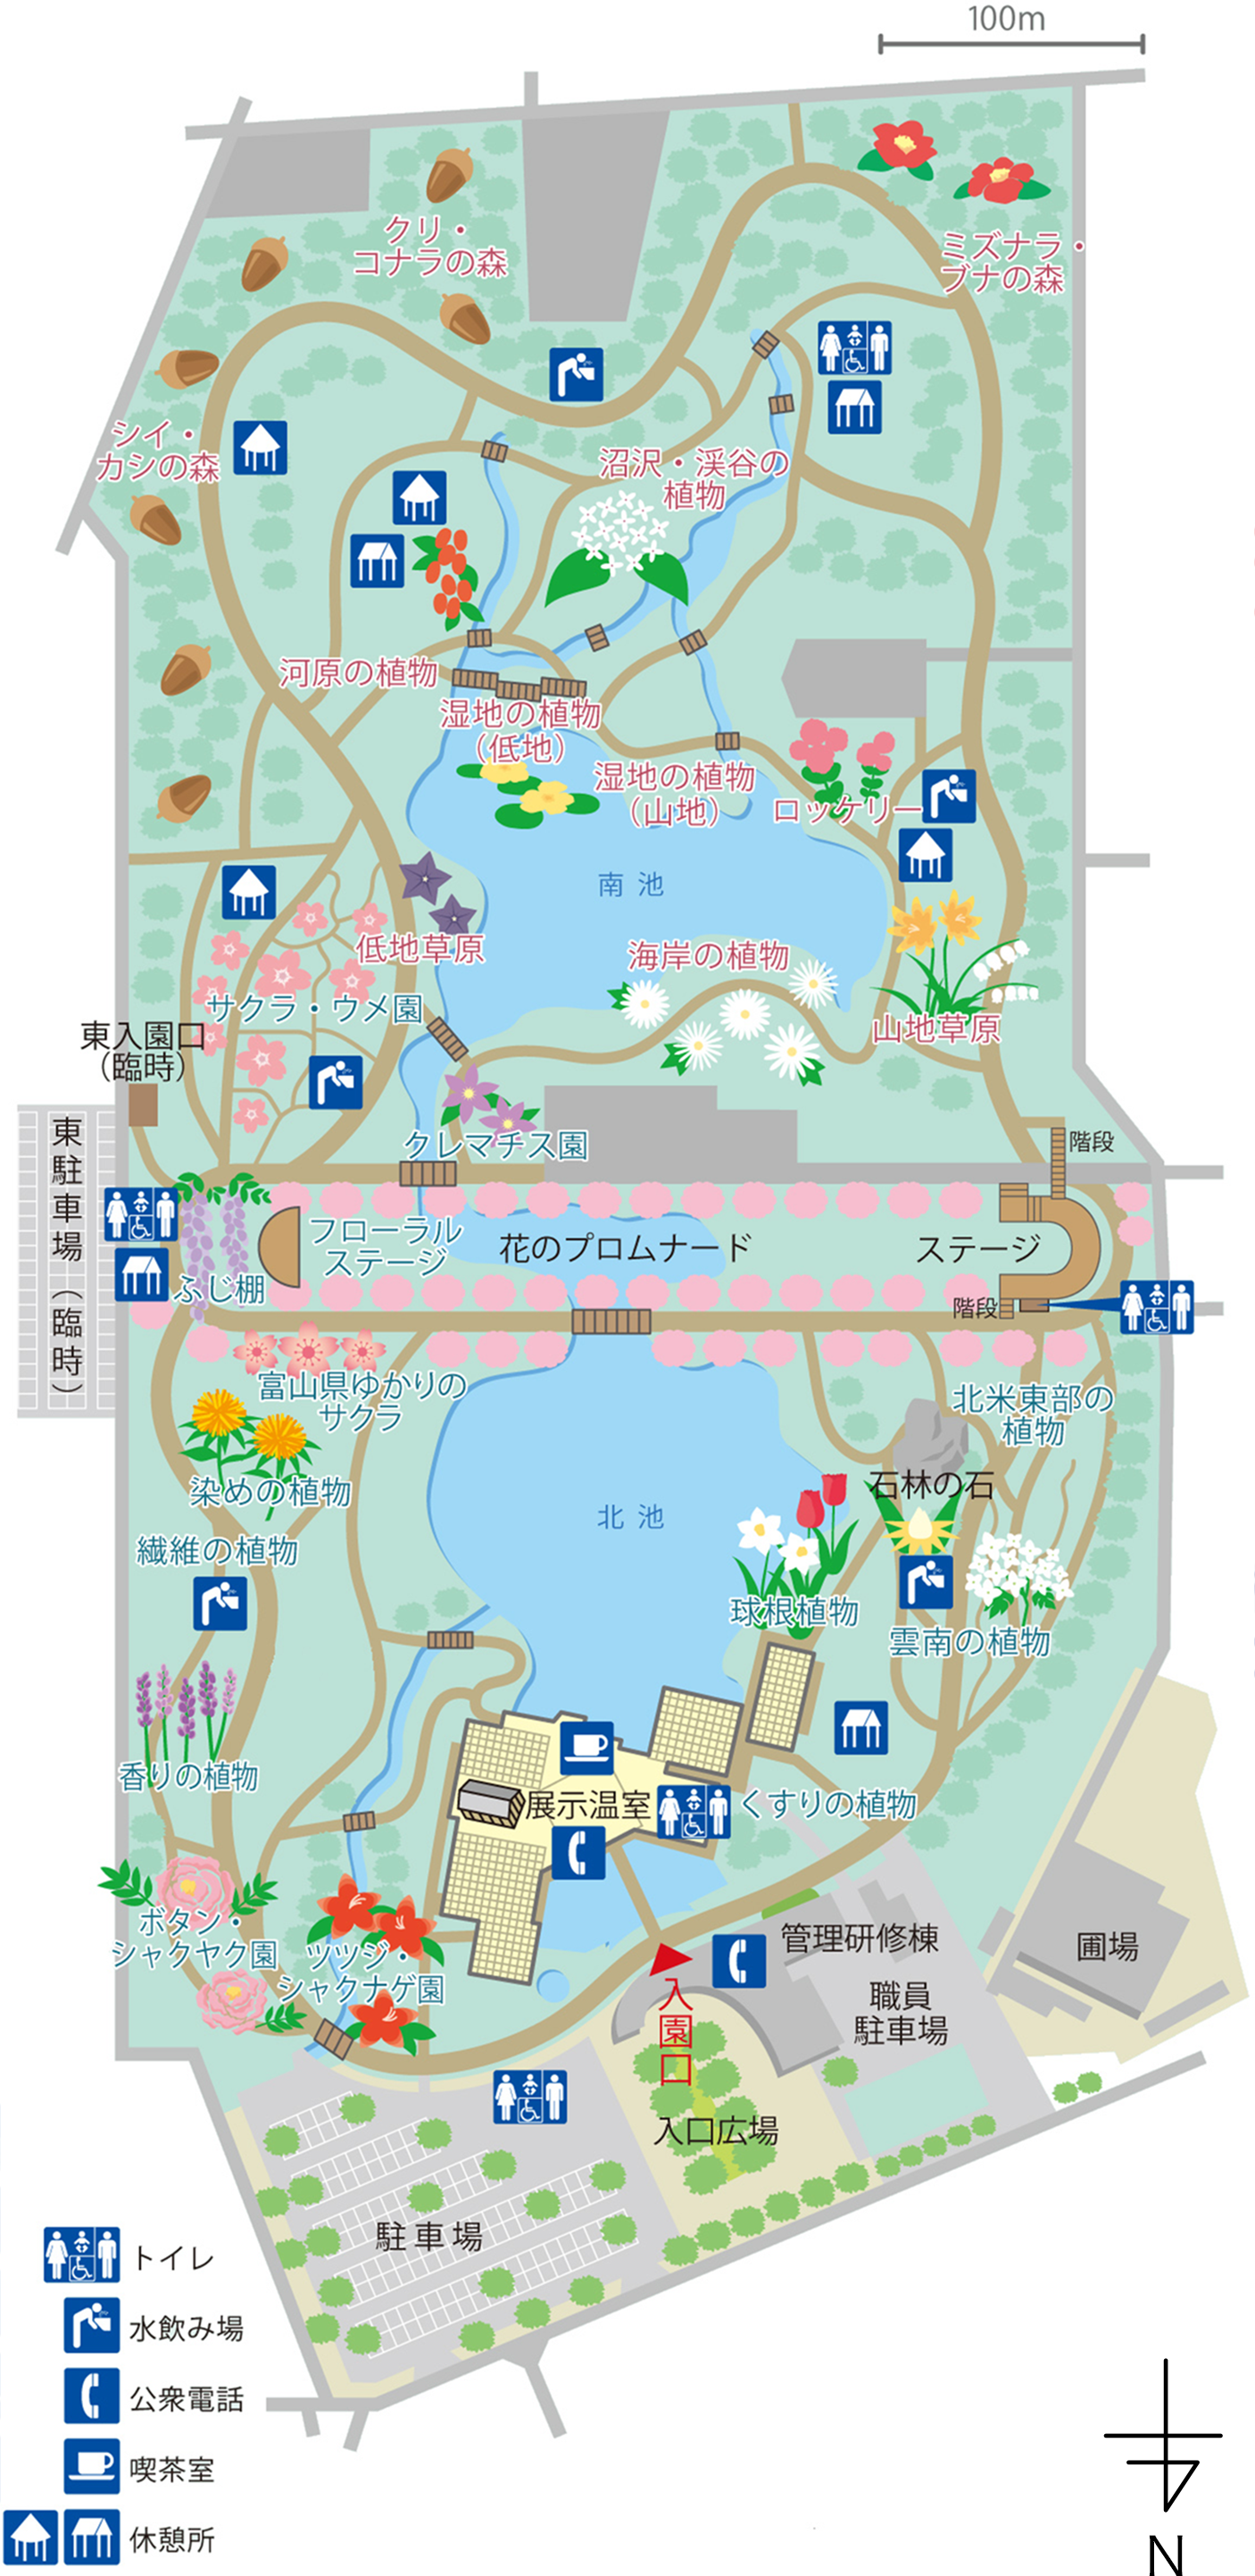 施設概要 園内マップ 富山県中央植物園ウェブサイト